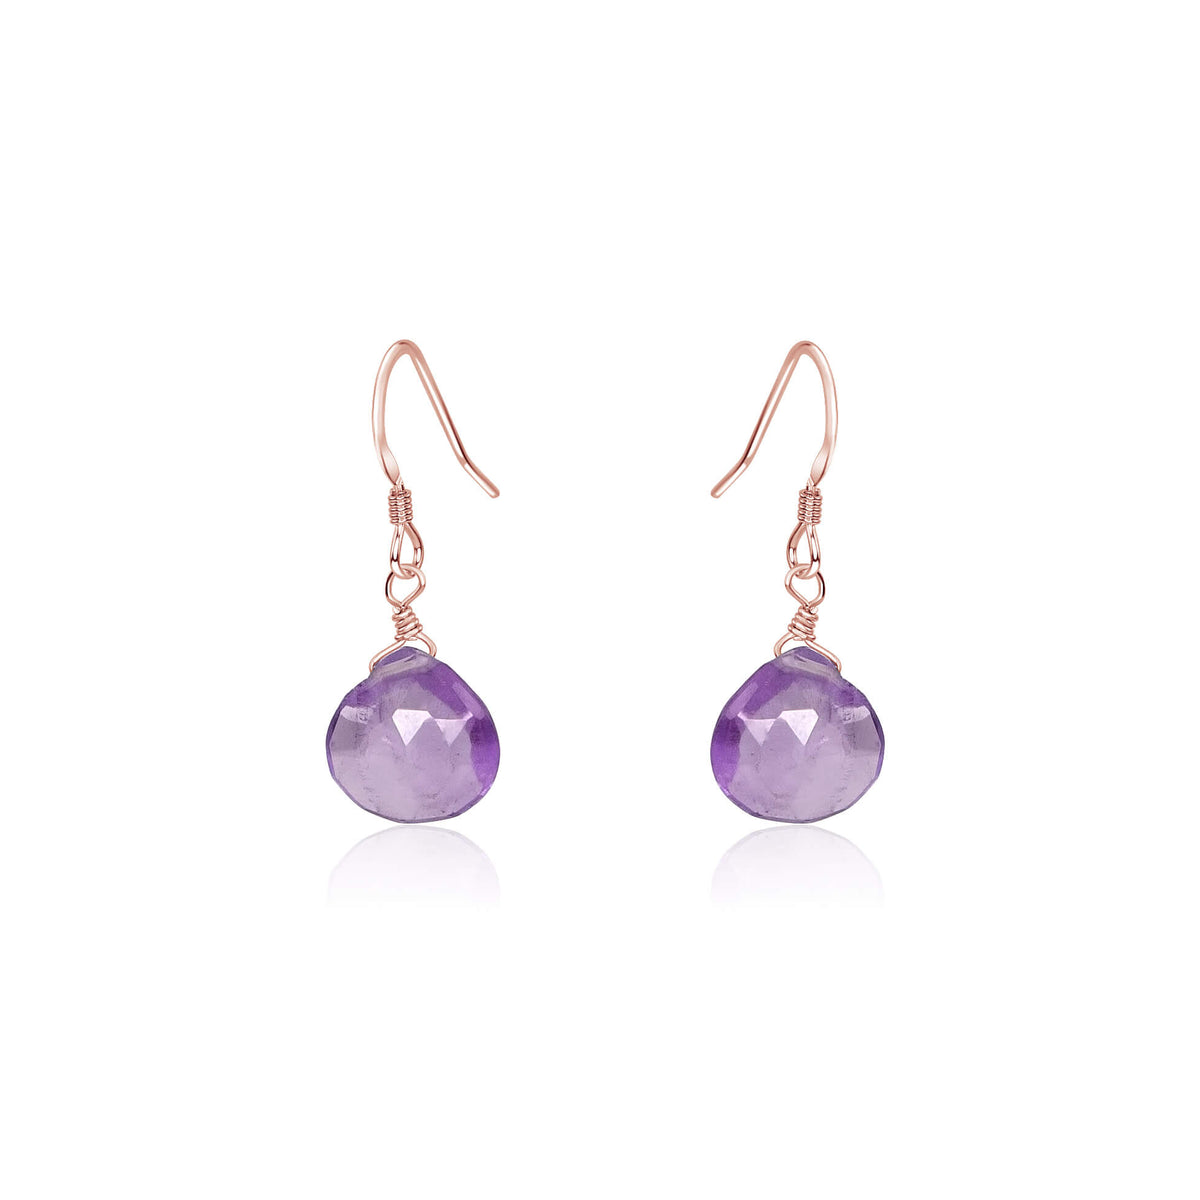 Teardrop Earrings - Lavender Amethyst - 14K Rose Gold Fill - Luna Tide Handmade Jewellery